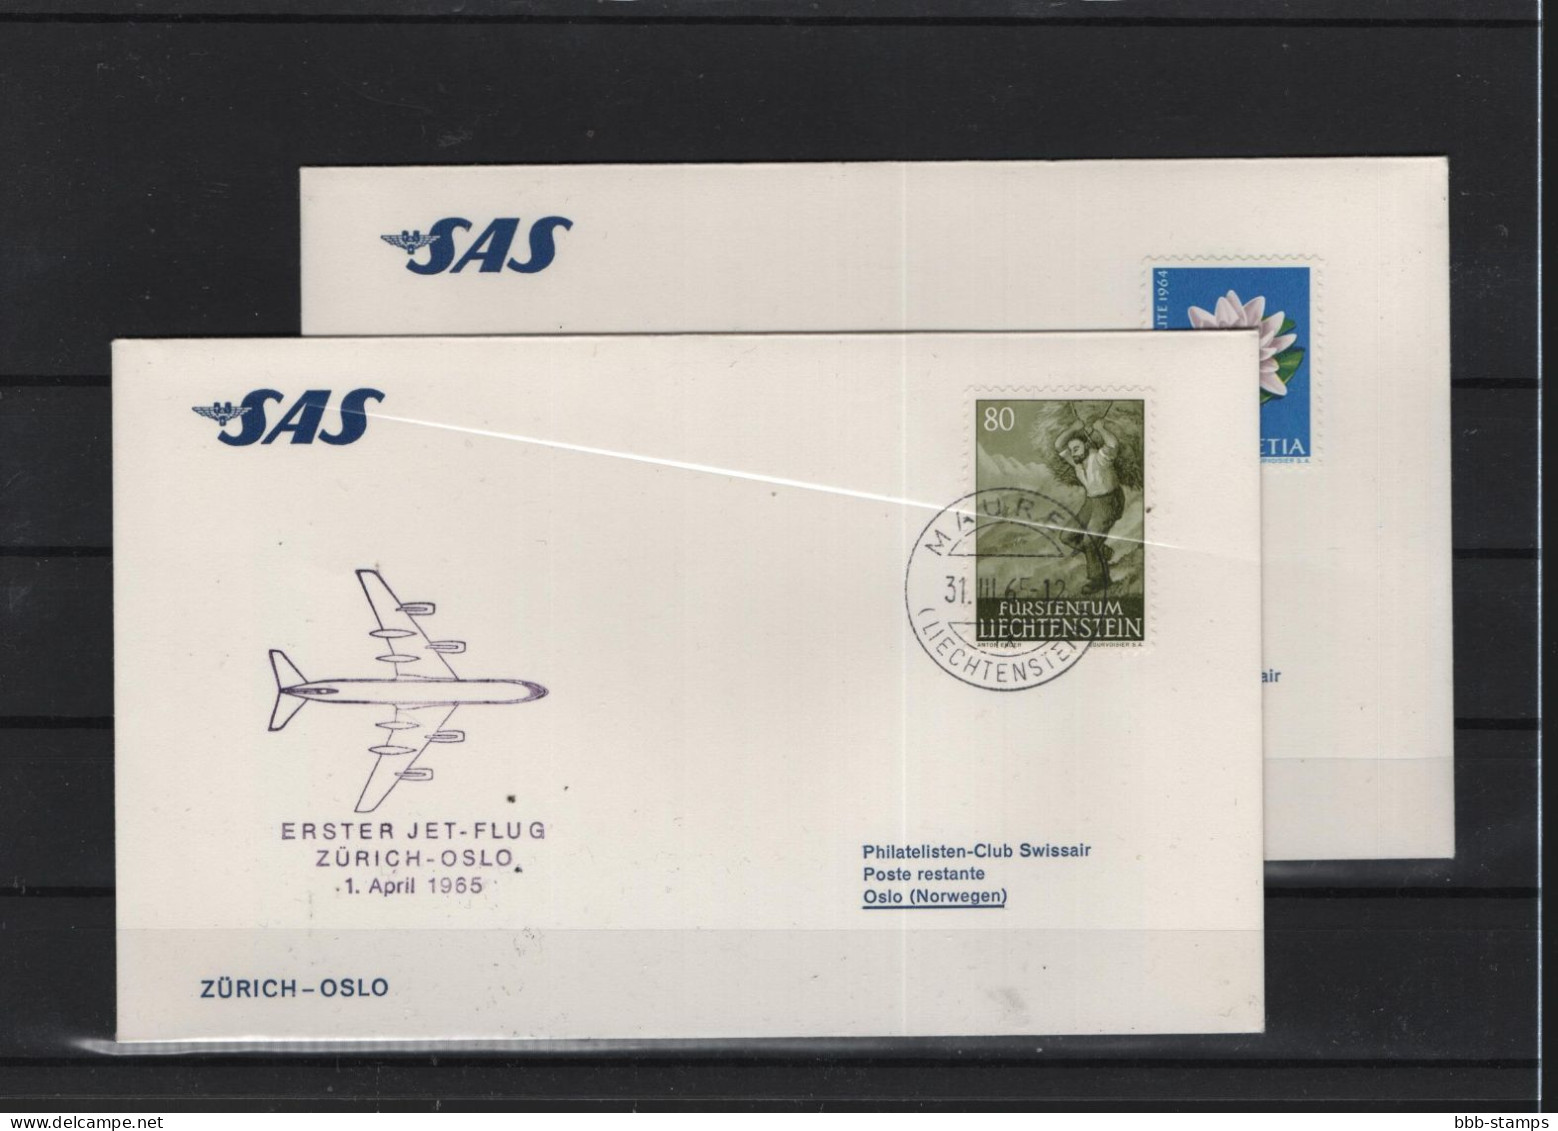 Schweiz Luftpost FFC SAS  1.4.1965 Zürich - Oslo - Primi Voli